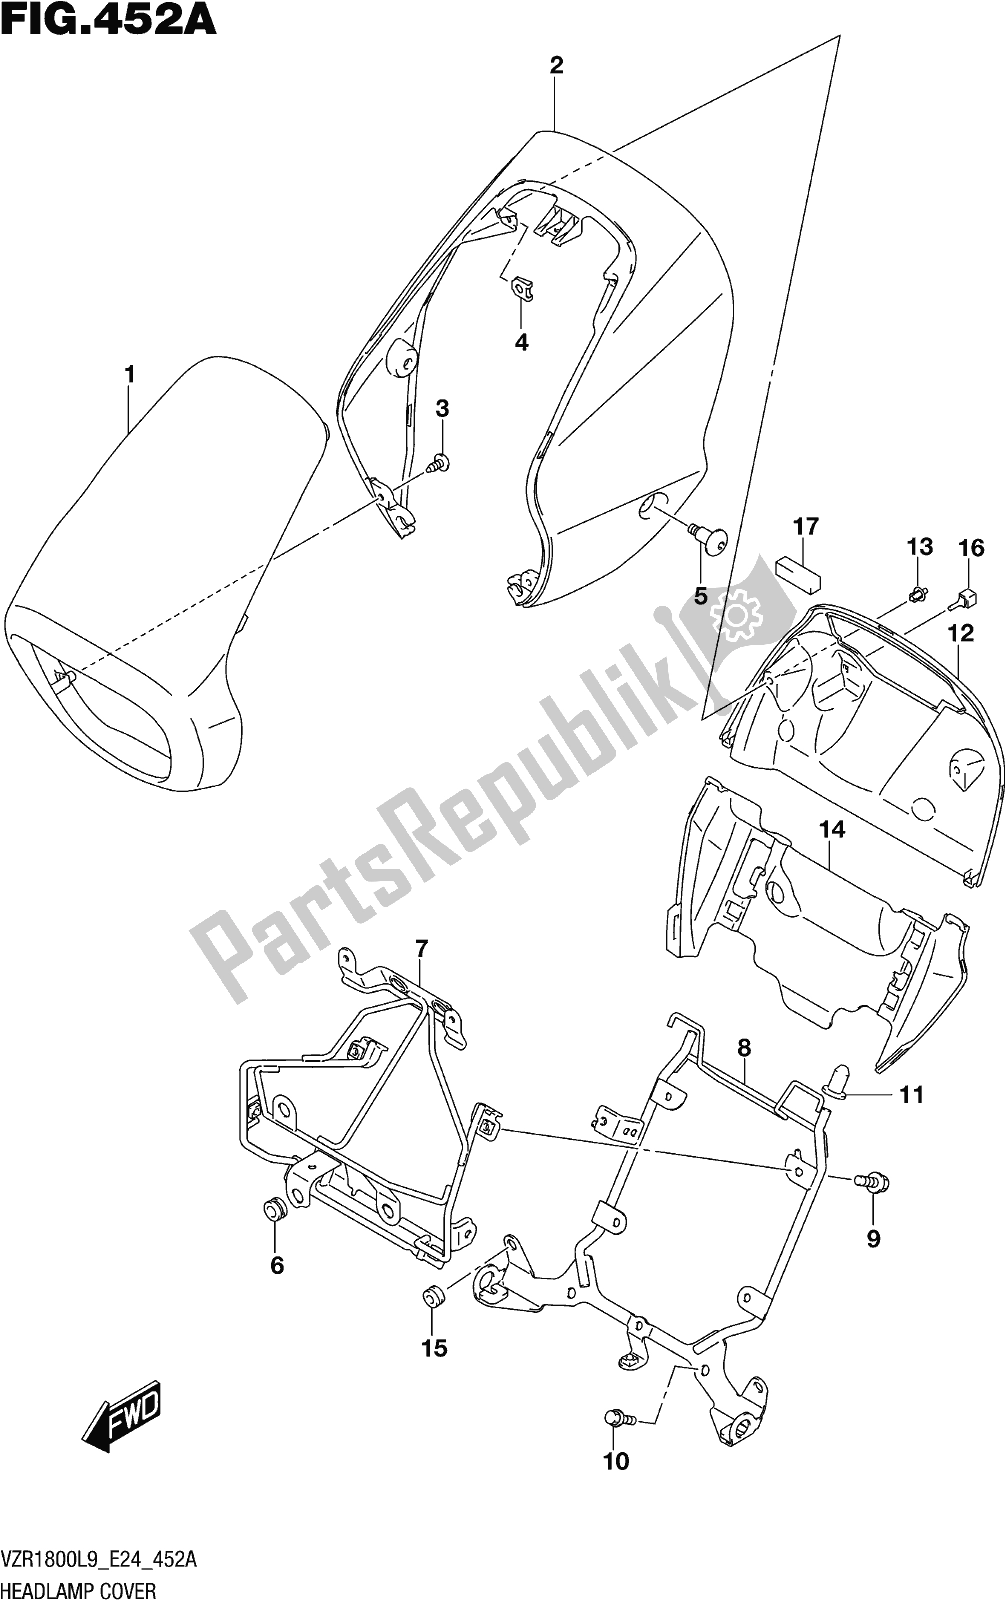 Todas las partes para Fig. 452a Headlamp Cover (vzr1800l9 E24) de Suzuki VZR 1800 2019